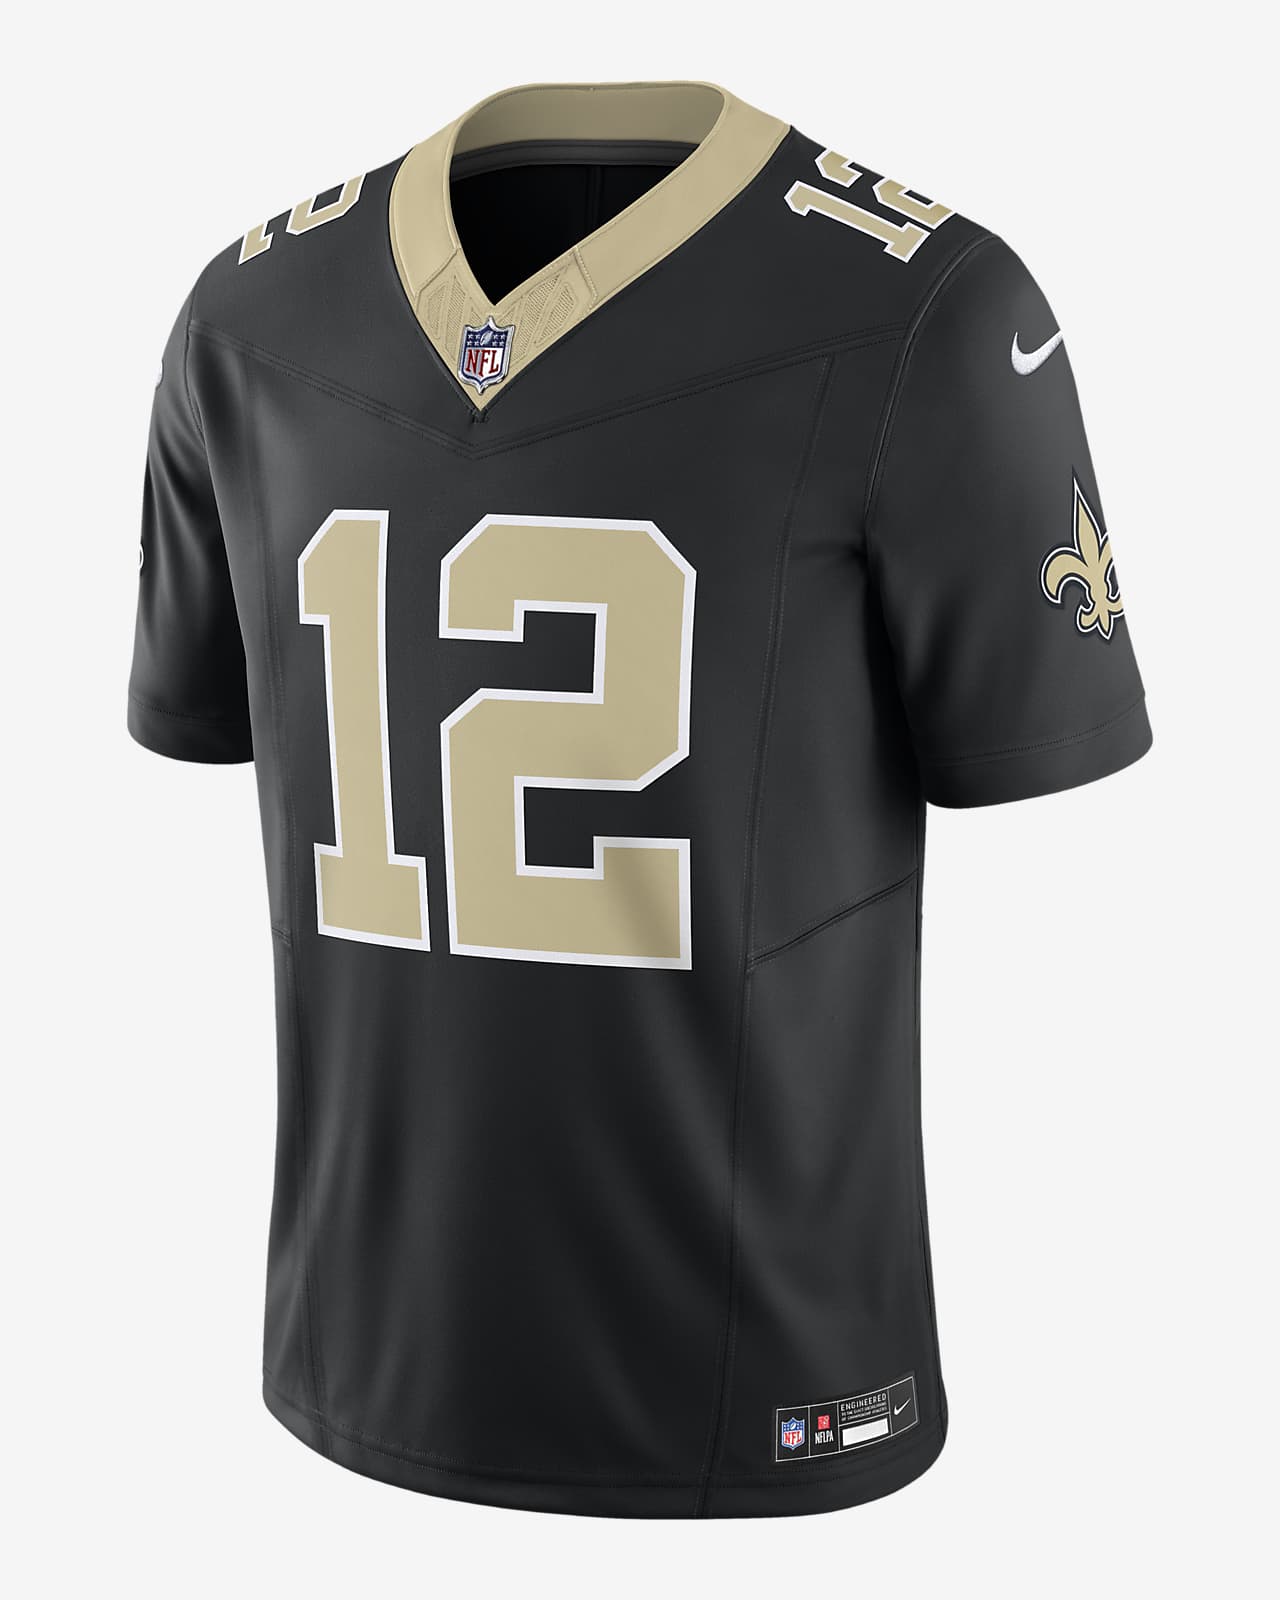 Jersey de fútbol americano Nike Dri-FIT de la NFL Limited para hombre Chris Olave New Orleans Saints